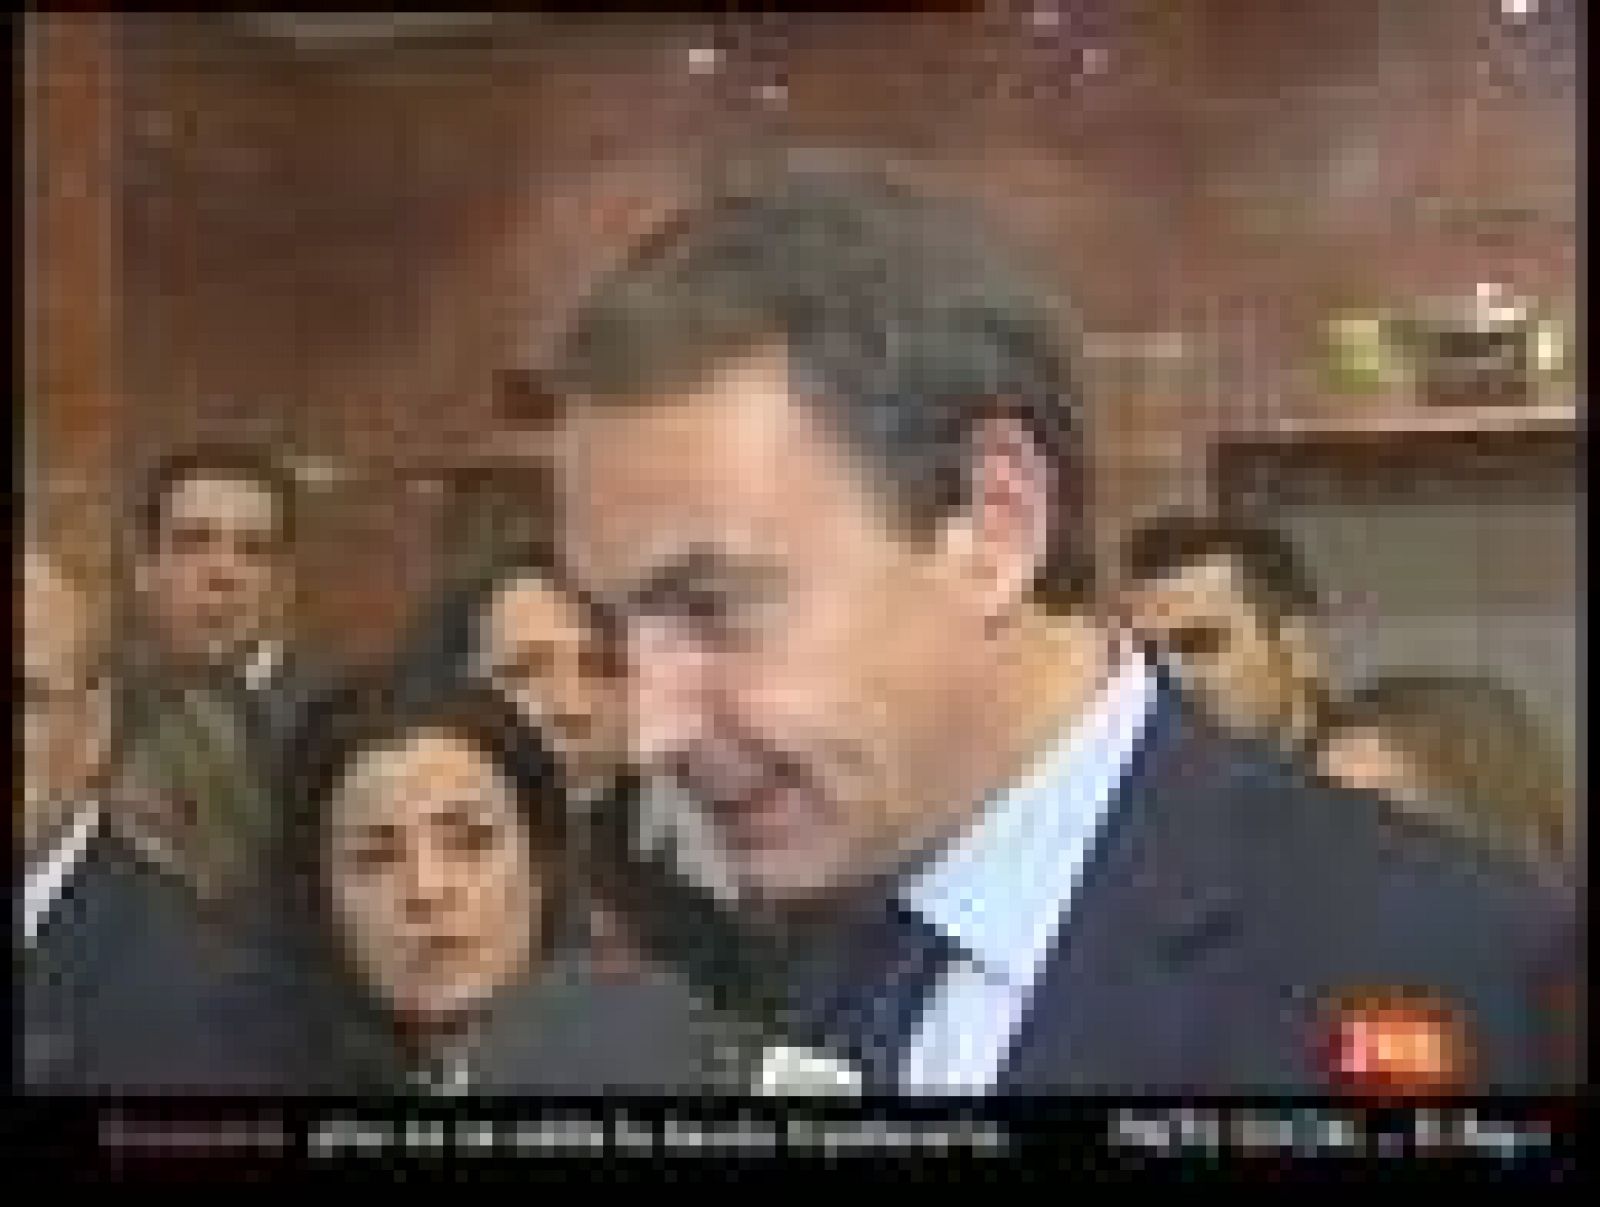 El jefe del Gobierno, José Luis Rodríguez Zapatero, ha sostenido este miércoles que no ha habido "trato de favor" hacia Cataluña y tampoco "rectificación" del Ejecutivo sobre el endeudamiento autonómico, después de que hayan decidido permitir a más CC.AA. refinanciar su deuda.

La Generalitat catalana, como el resto de comunidades, "se podrá endeudar si compromete la reducción al déficit al 1,3%", ha afirmado el jefe del Ejecutivo en los pasillos del Congreso de los Diputados

Zapatero ha querido zanjar de esta forma la polémica abierta después de que autorizara al presidente de la Generalitat, Artur Mas, a endeudarse, lo que ha provocado que varias comunidades autónomas advirtieran este martes de que no estaban dispuestas a recibir un trato discriminatorio respecto a las concesiones dadas a Cataluña.